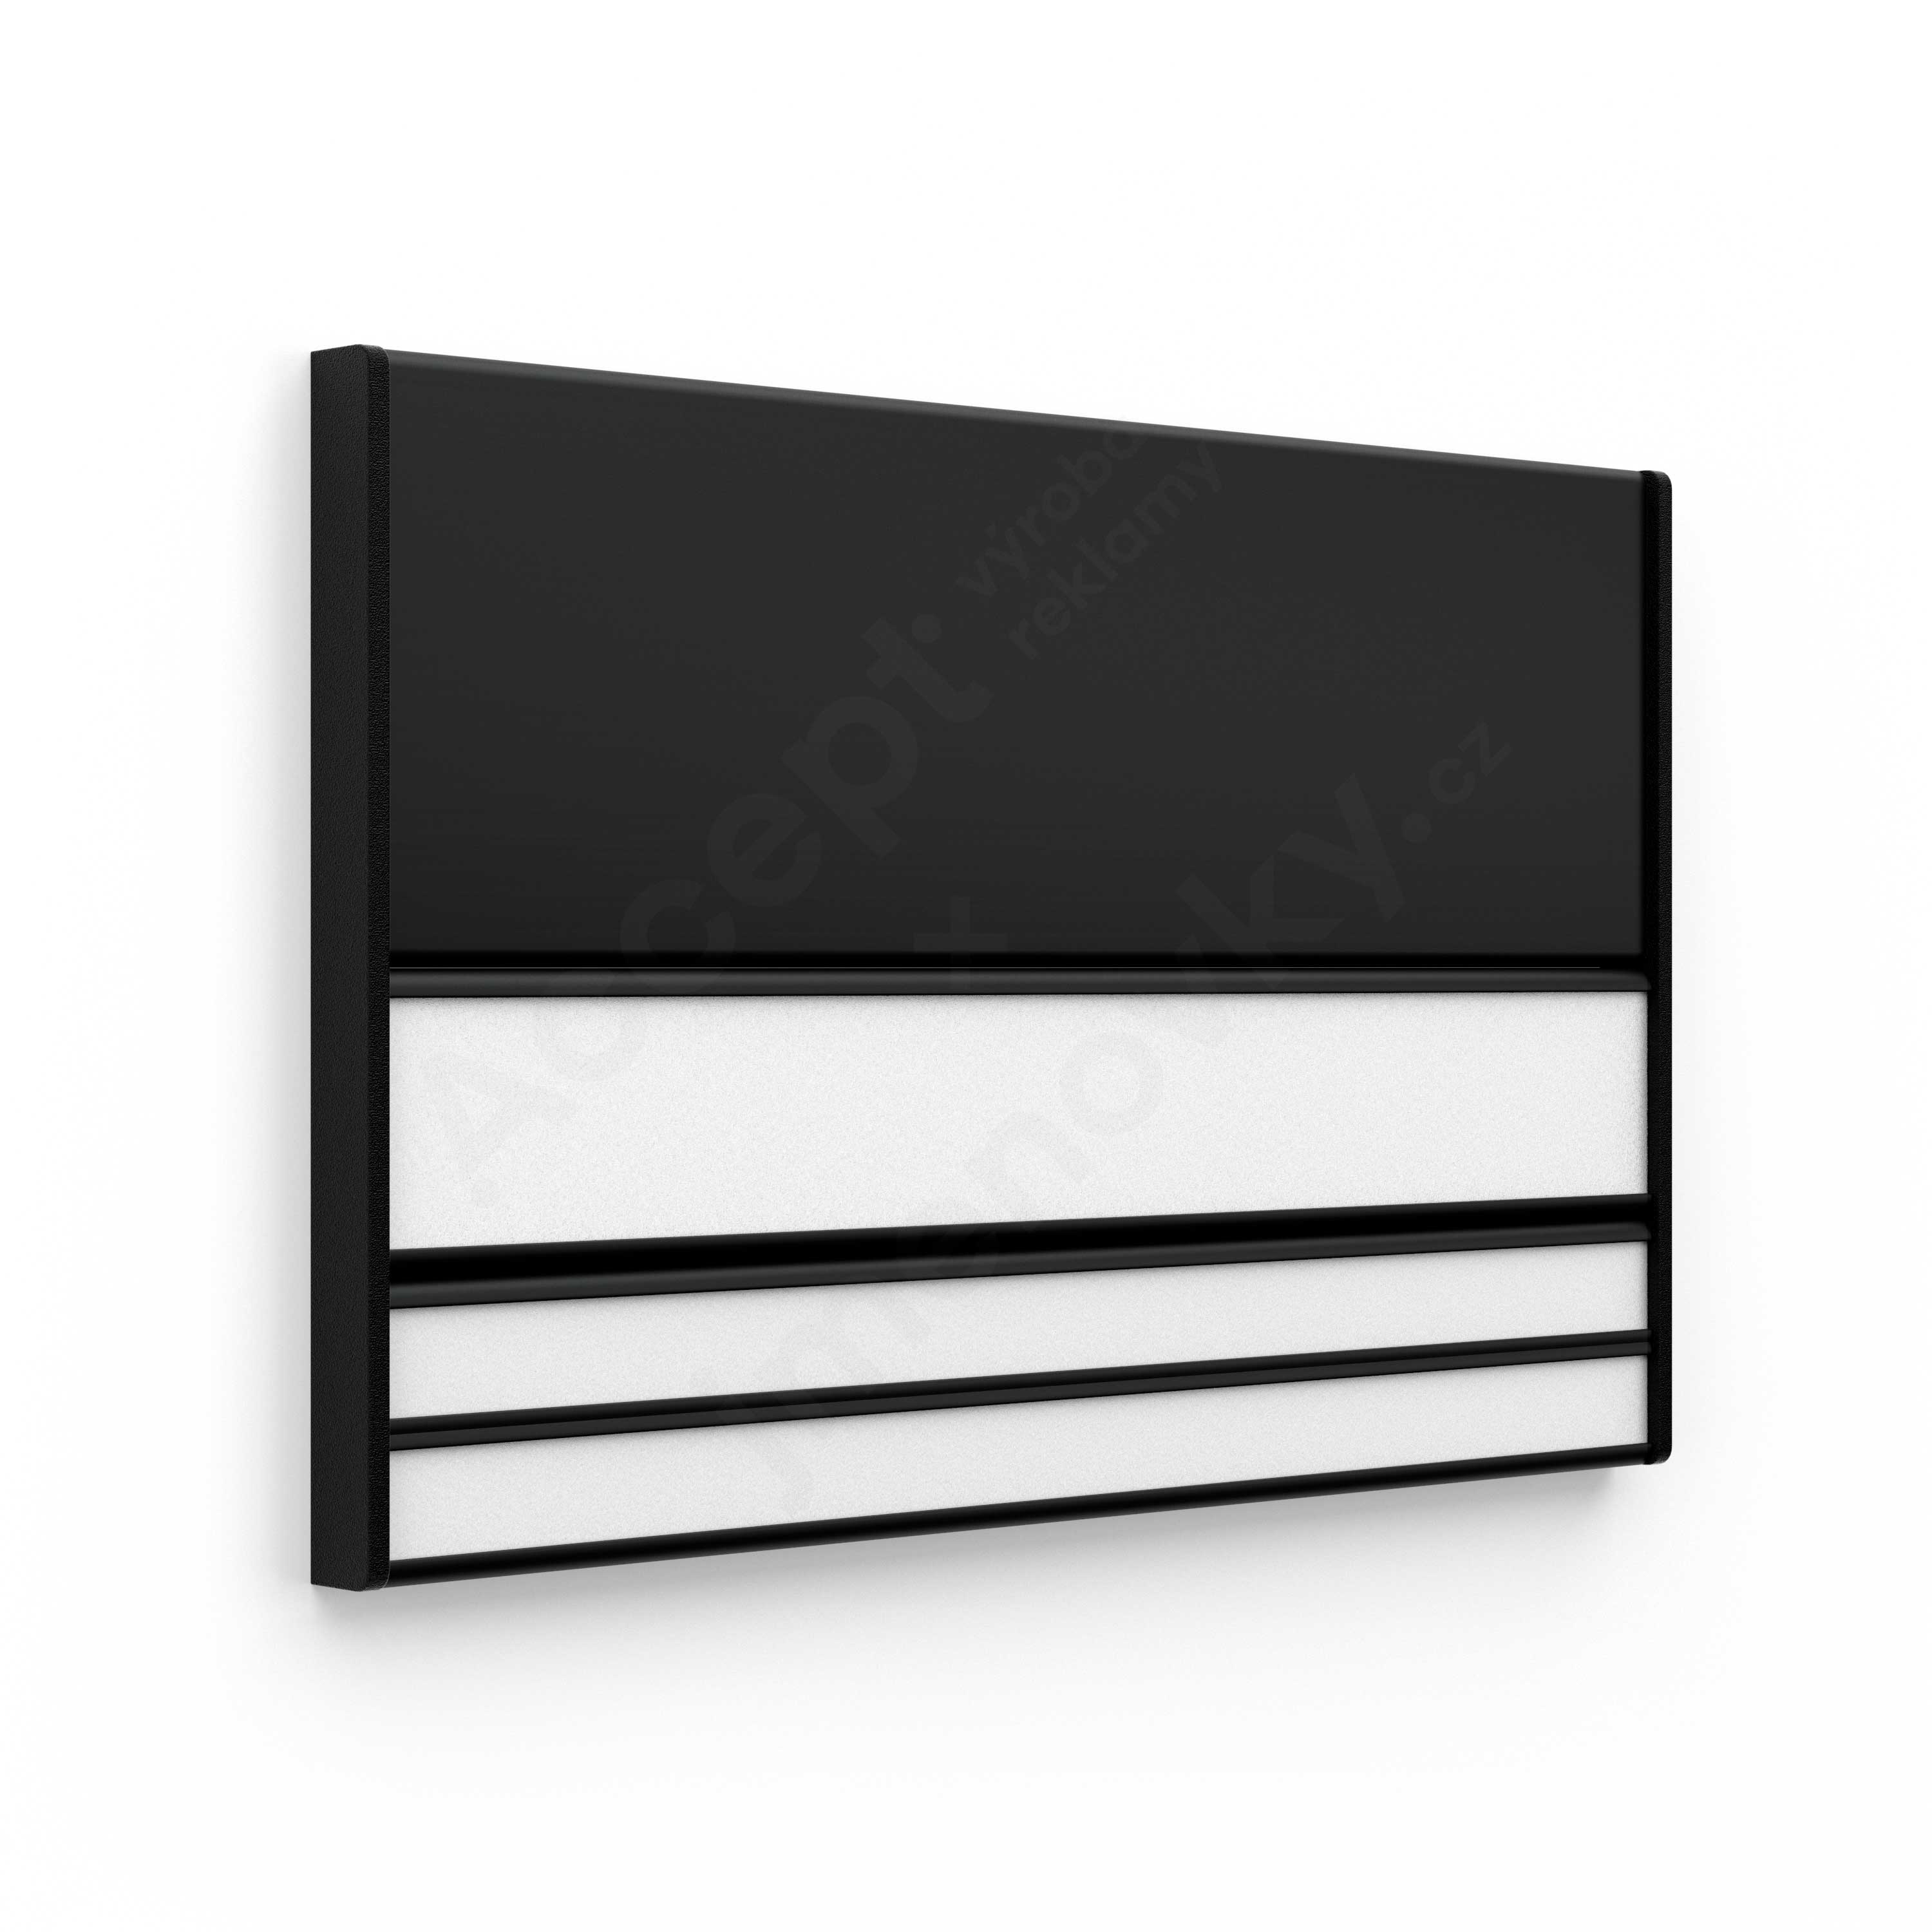 Dveřní tabulka ACS černá (kombinovaný systém, 187 x 125 mm)